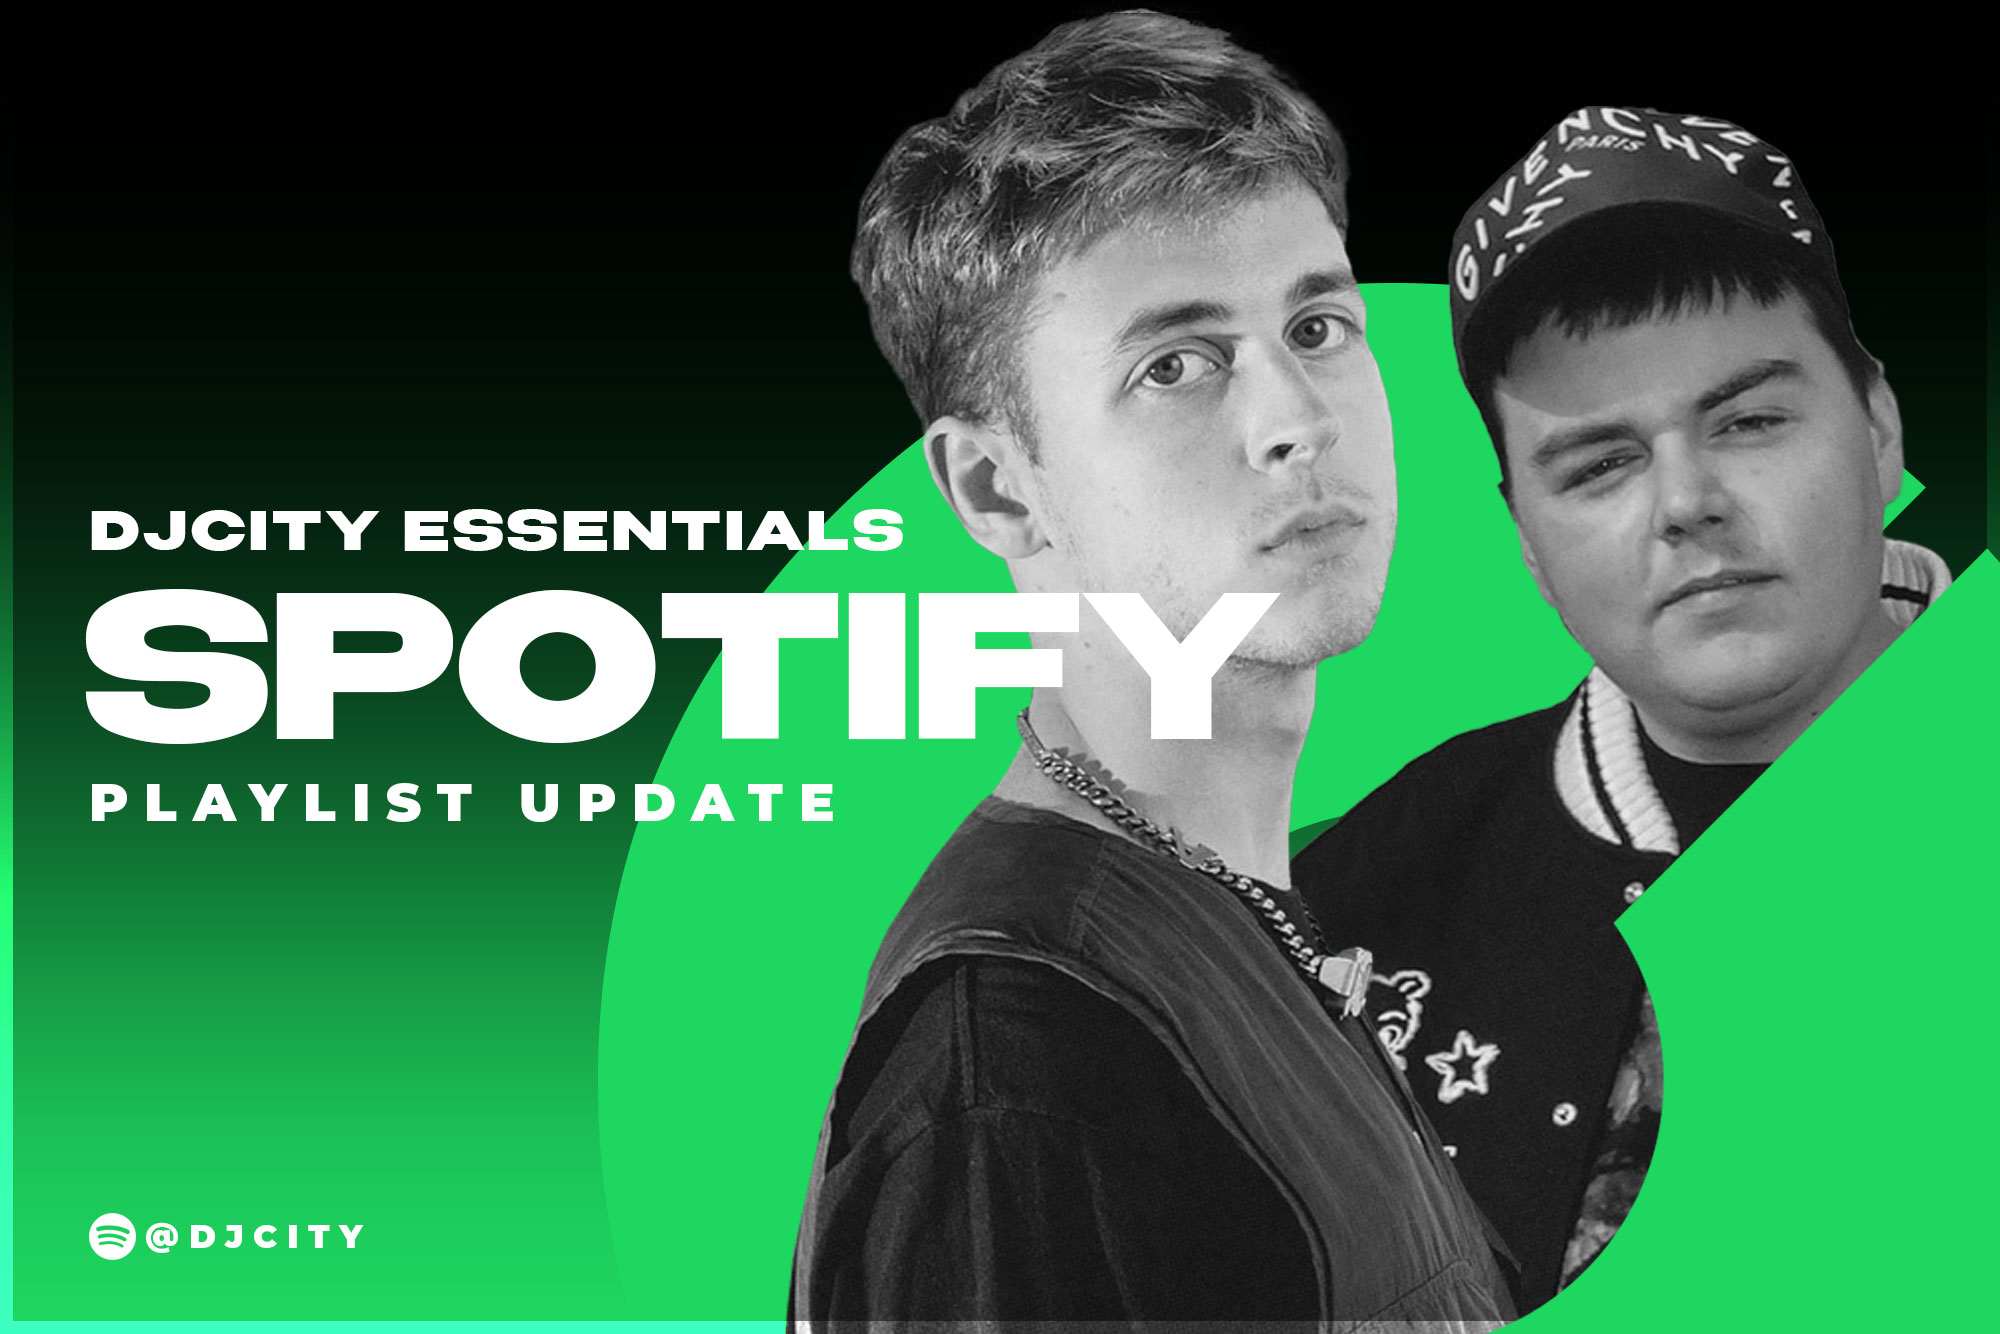 DJcity’s Spotify Playlist Update: Mar. 30